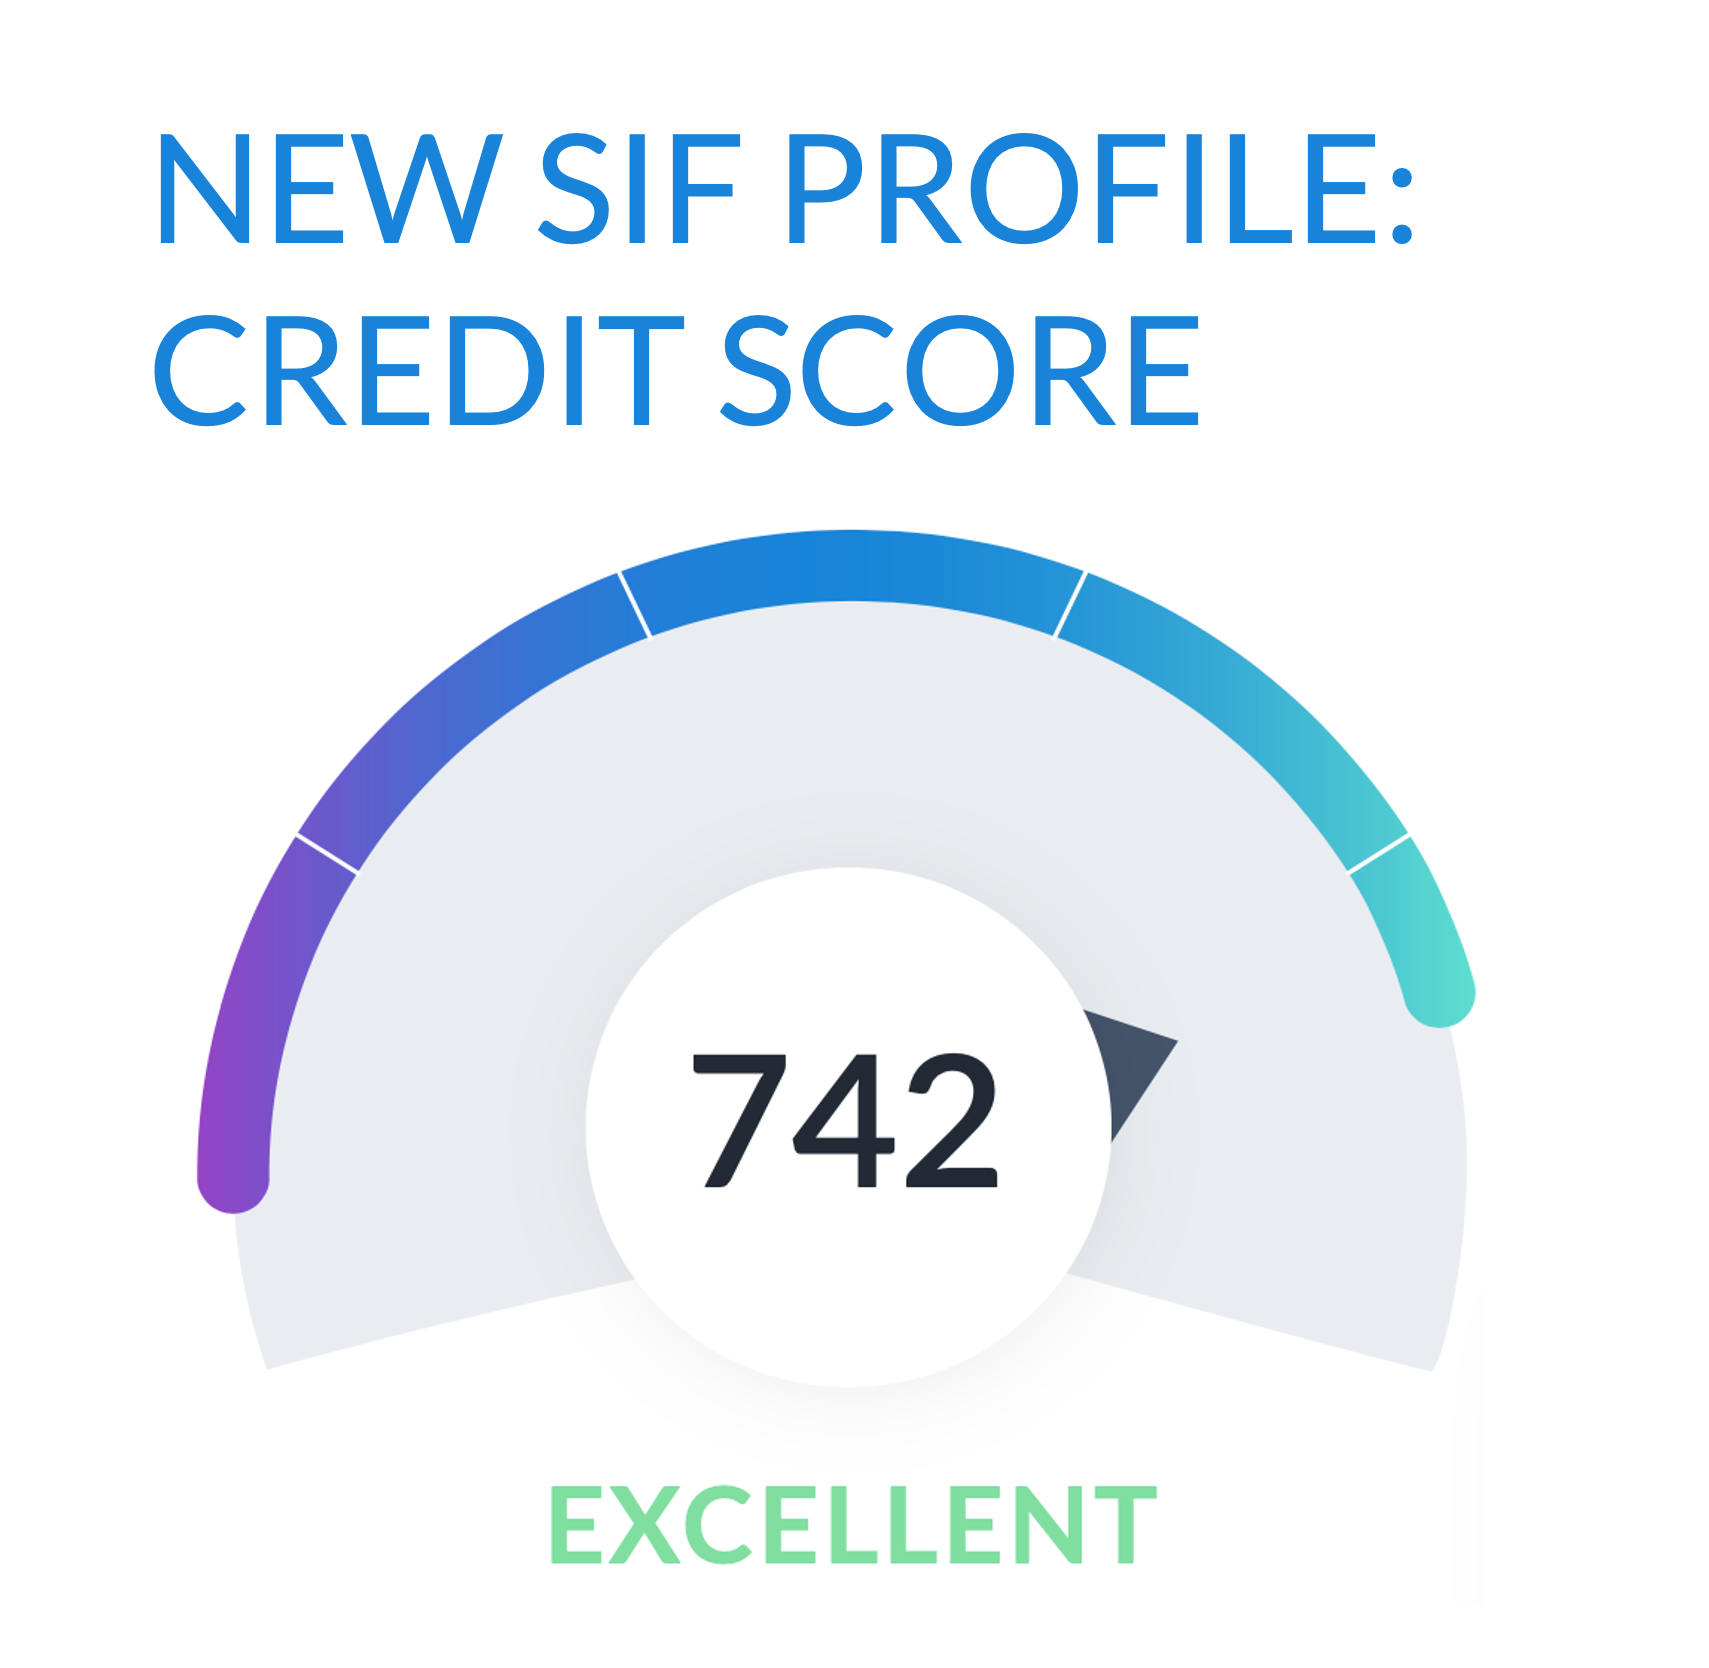 New SIF Profile: Credit Score